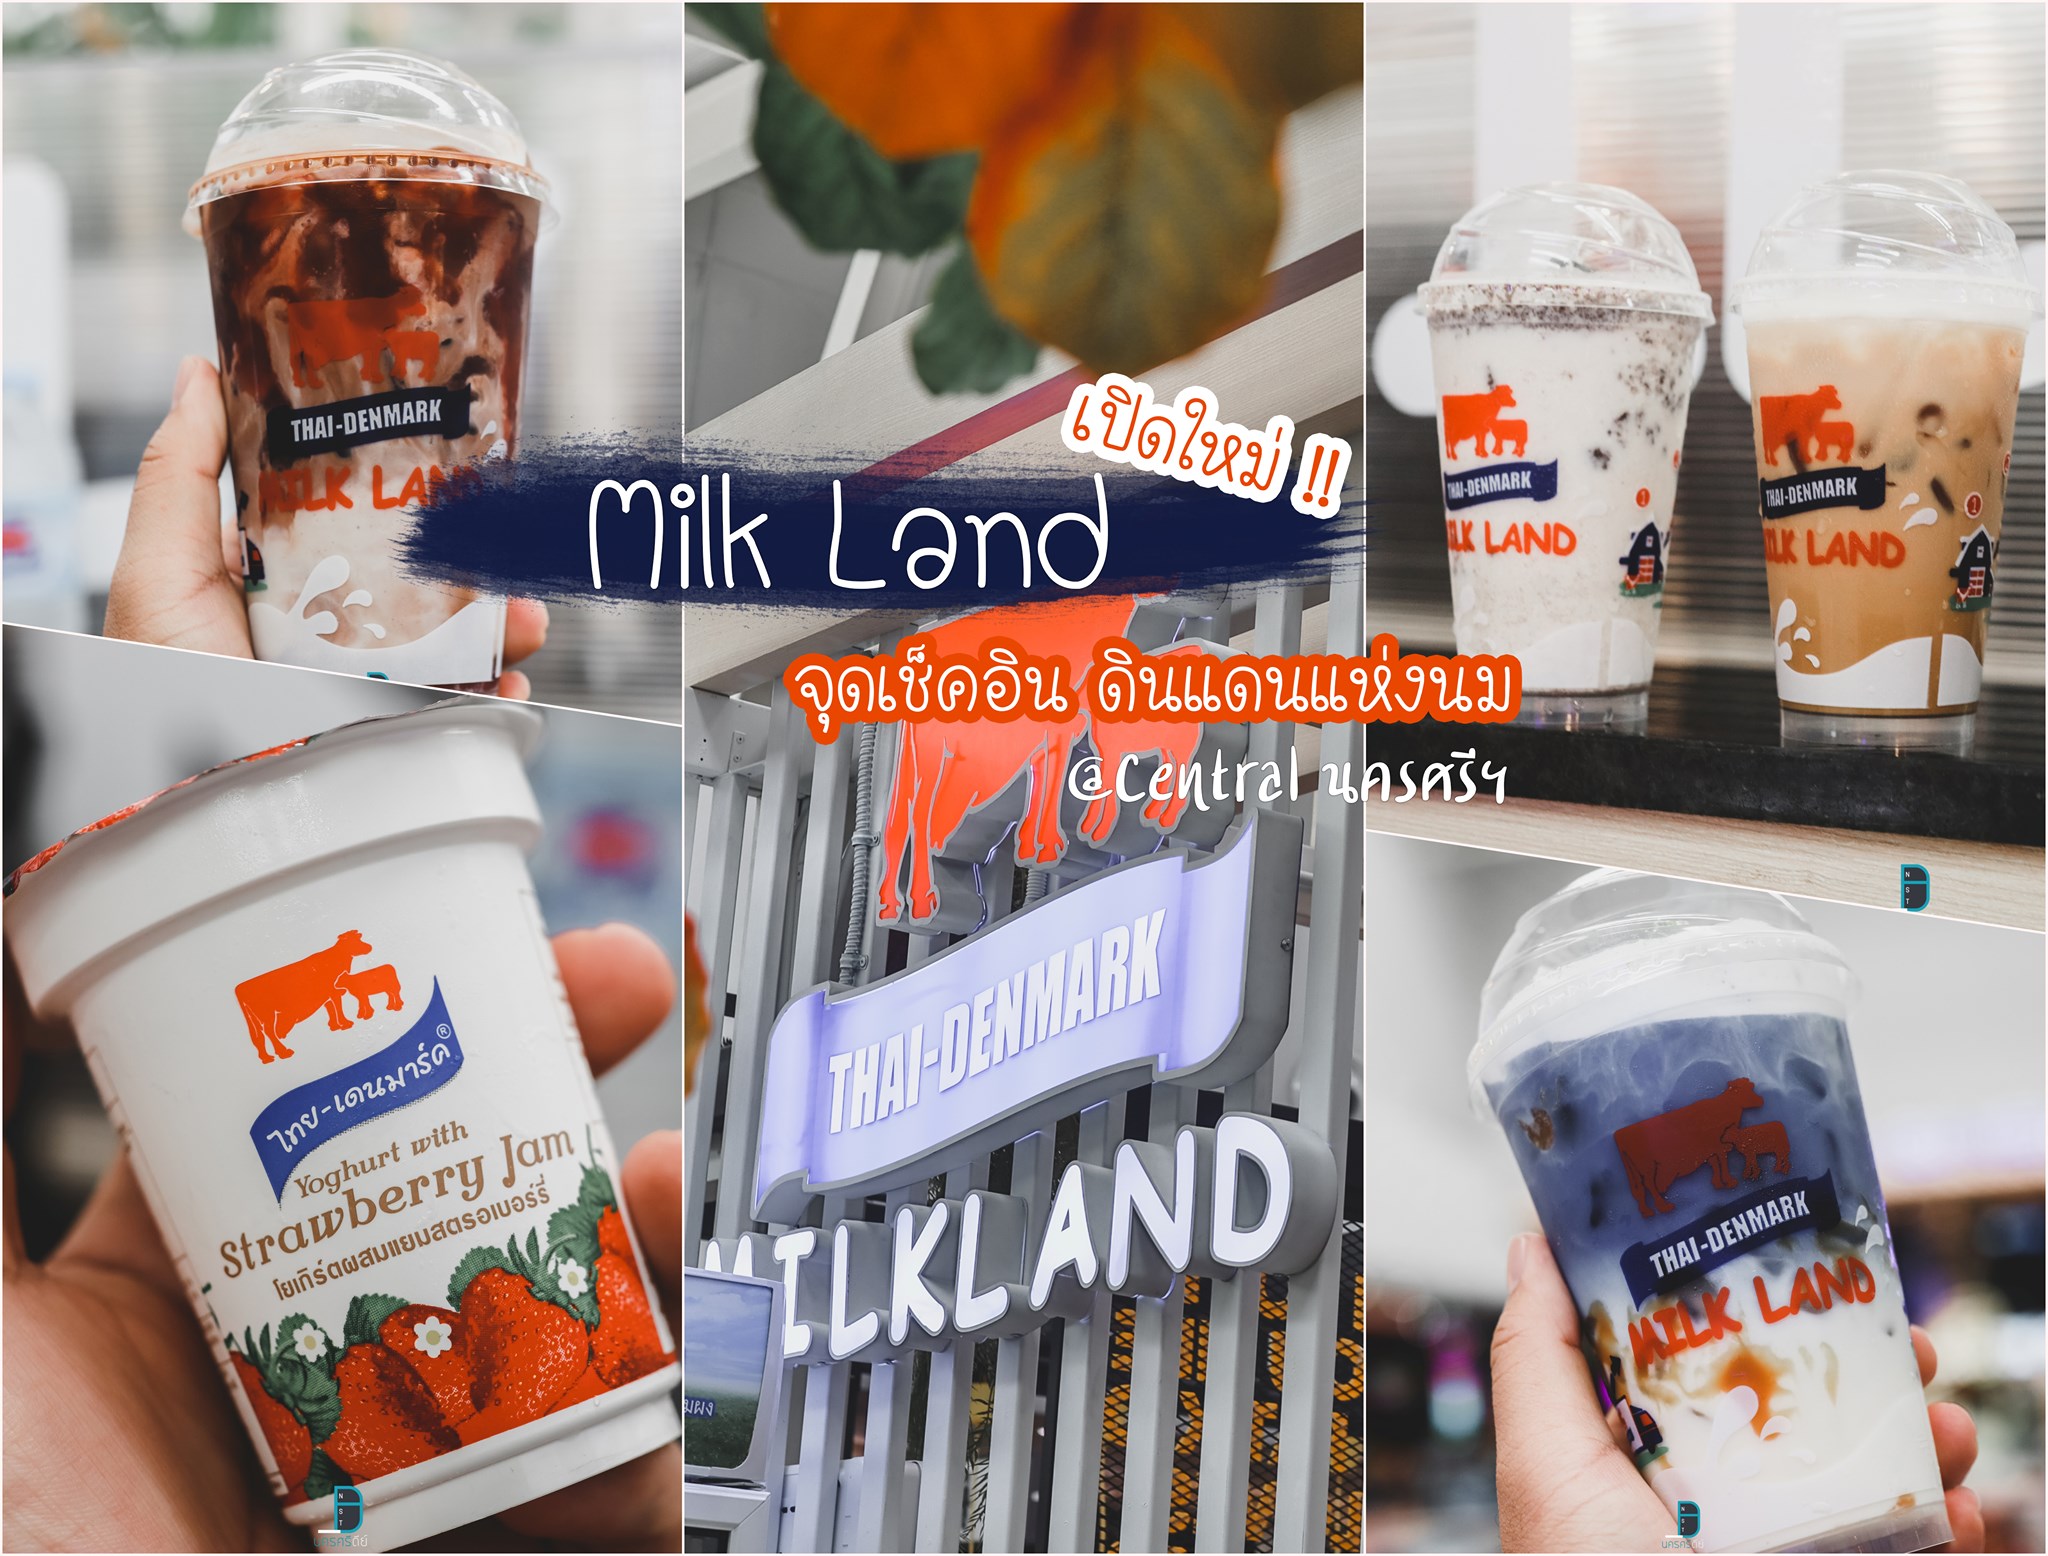  19.-Milk-Land-ร้านนมไทยเดนมาร์กเปิดใหม่-สายนมต้องห้ามพลาด---
 สถานที่ท่องเที่ยว,นครศรีธรรมราช,ที่พัก,จุดเช็คอิน,ของกิน,ร้านอาหาร,โรงแรม,